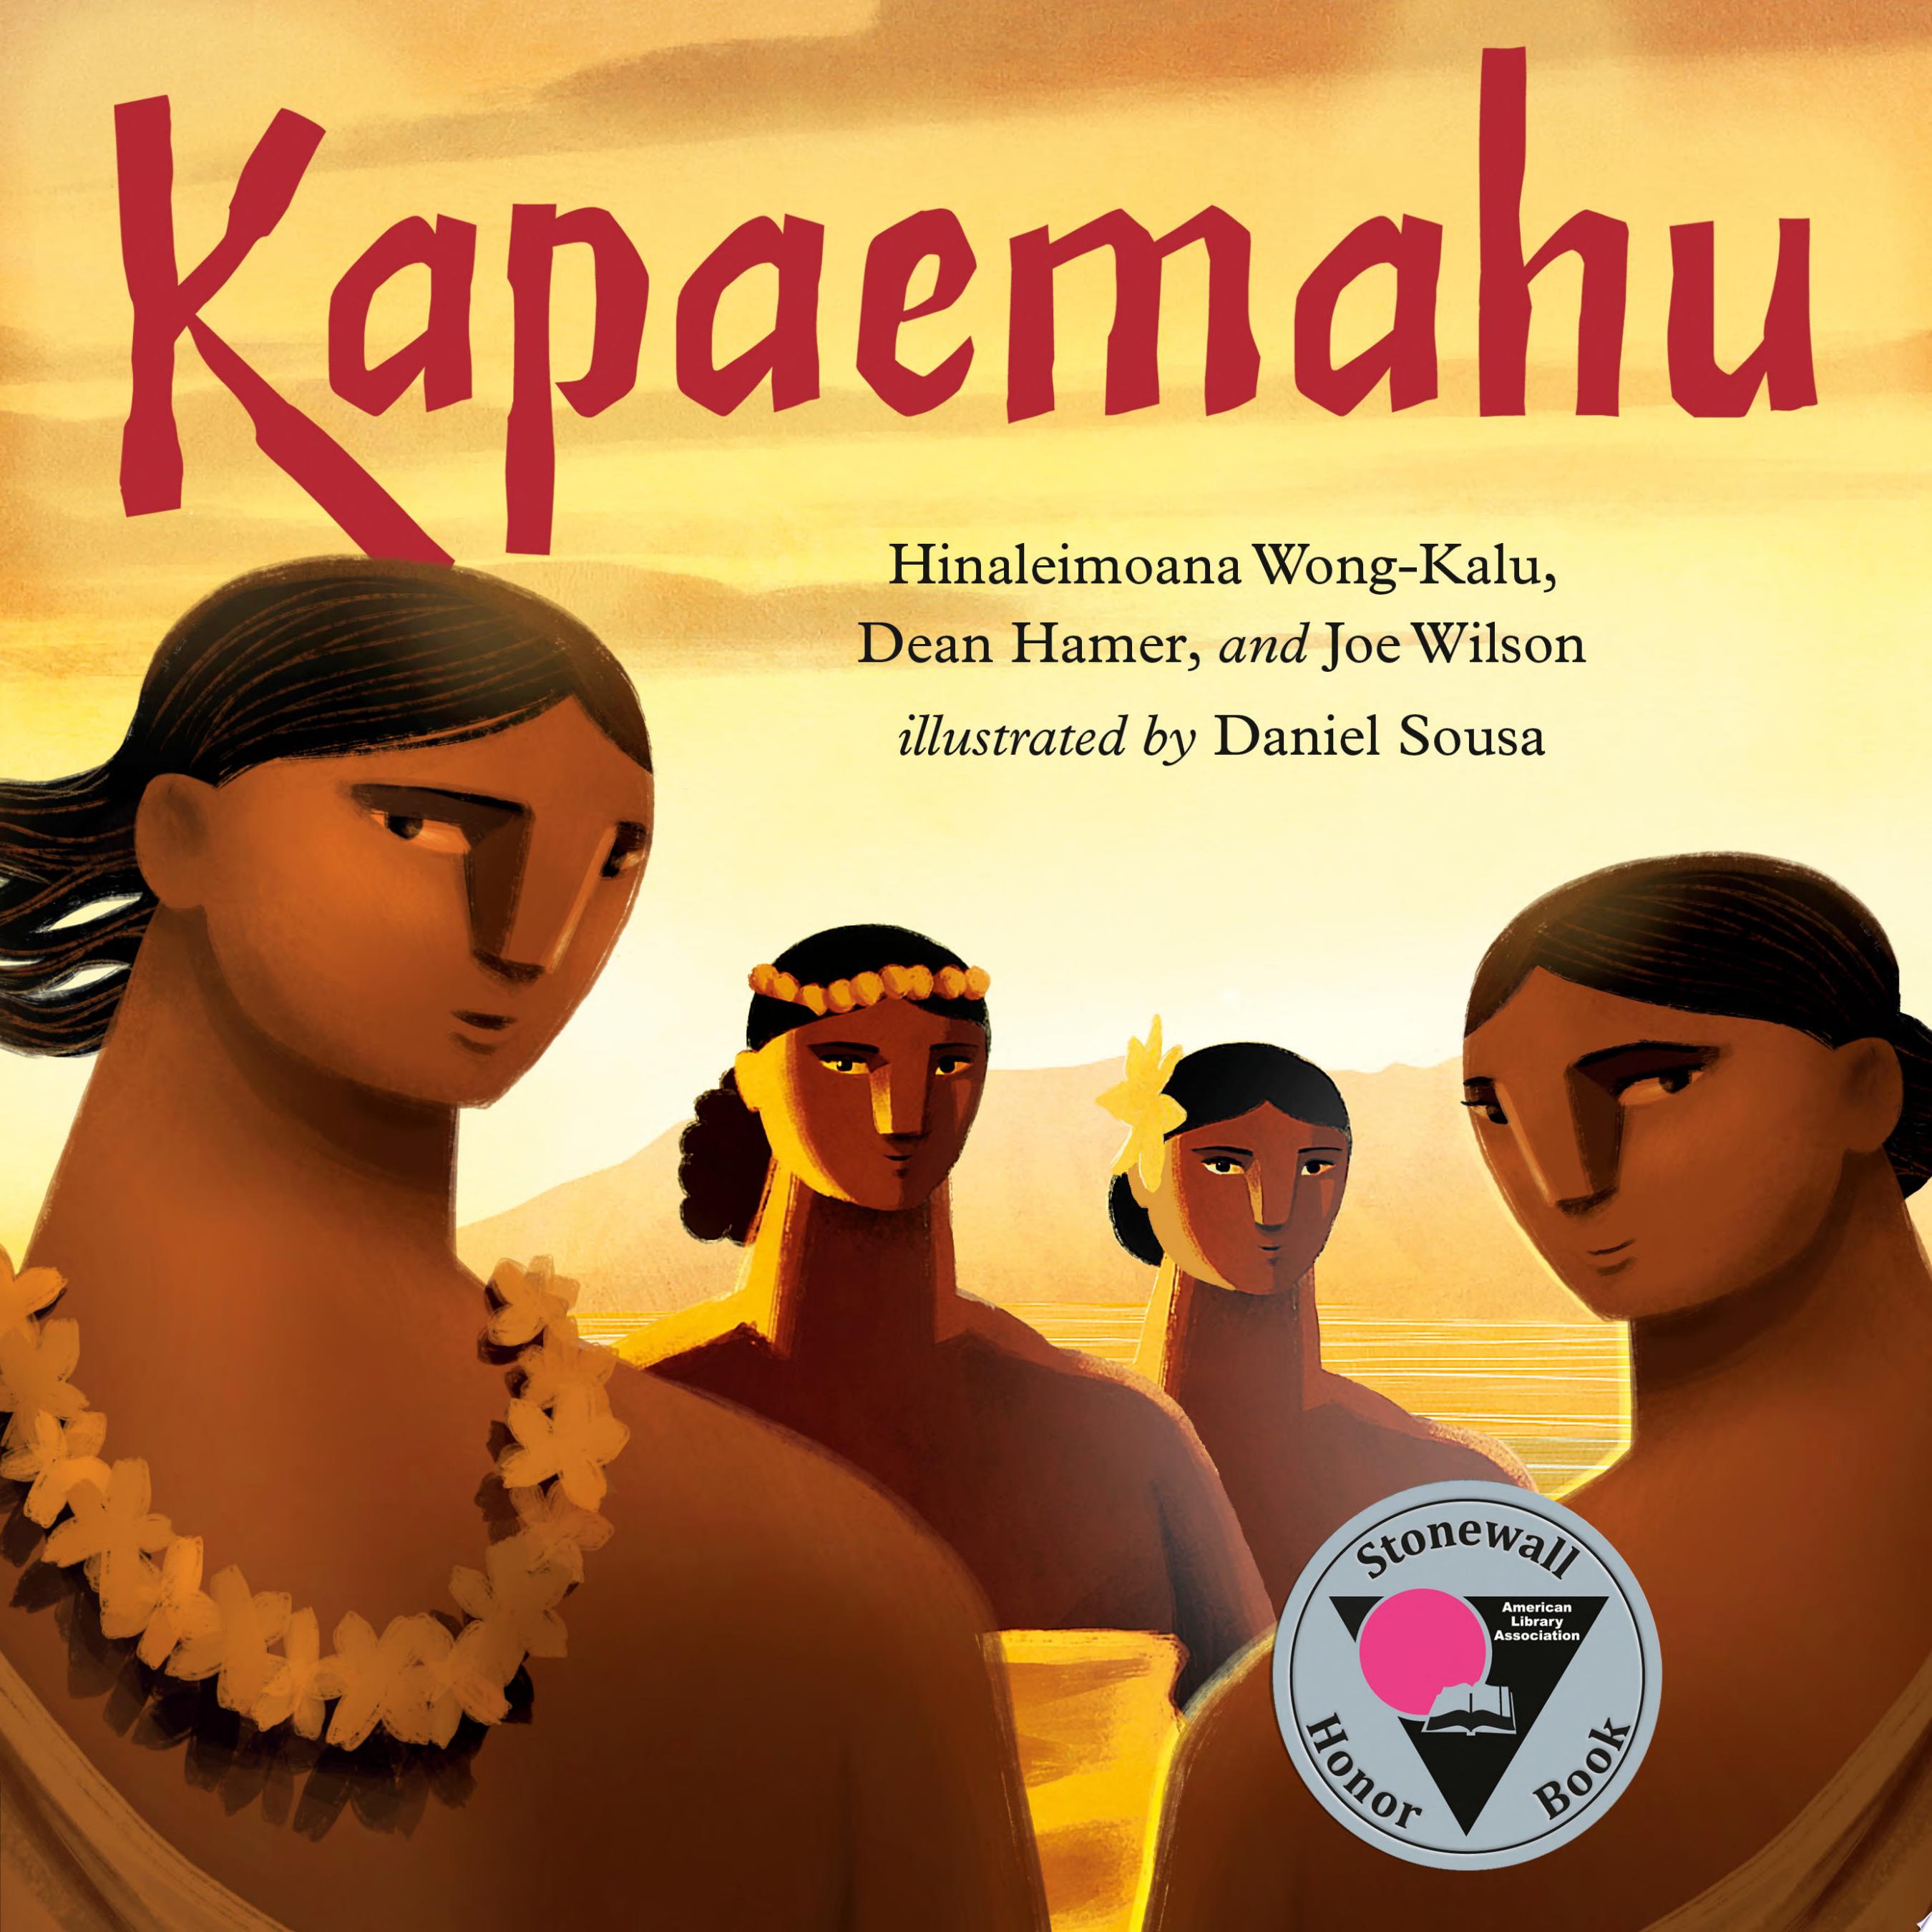 Image for "Kapaemahu"